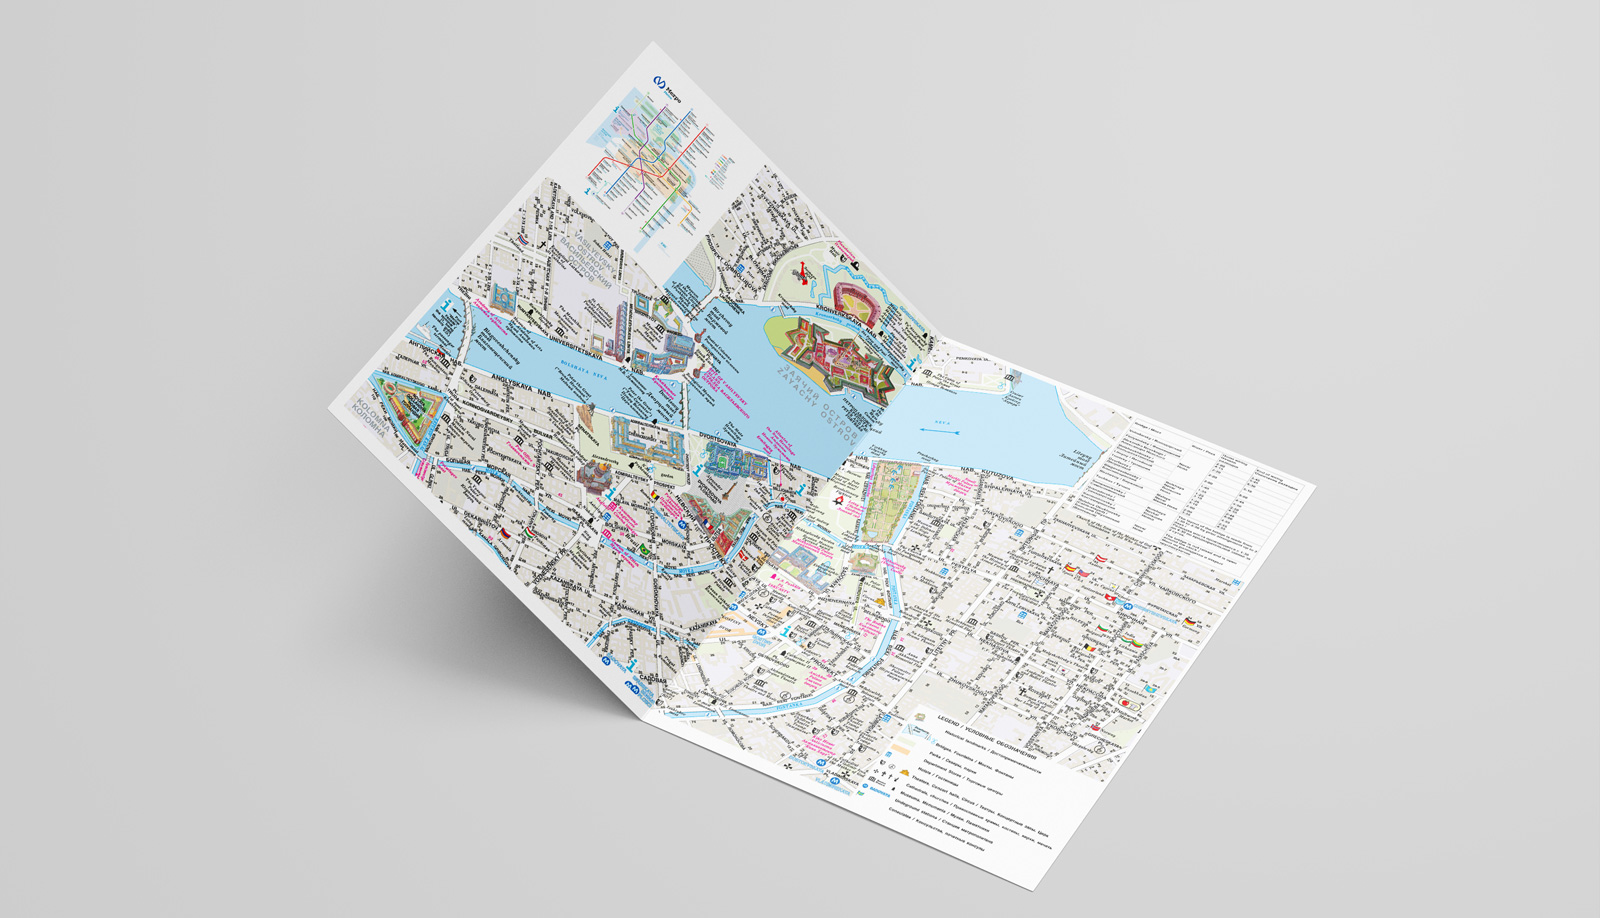 Diseño gráfico y creativo de flyers, folletos, dípticos y trípticos para campaña de publicidad para agencia de viajes y Turismo de Rusia